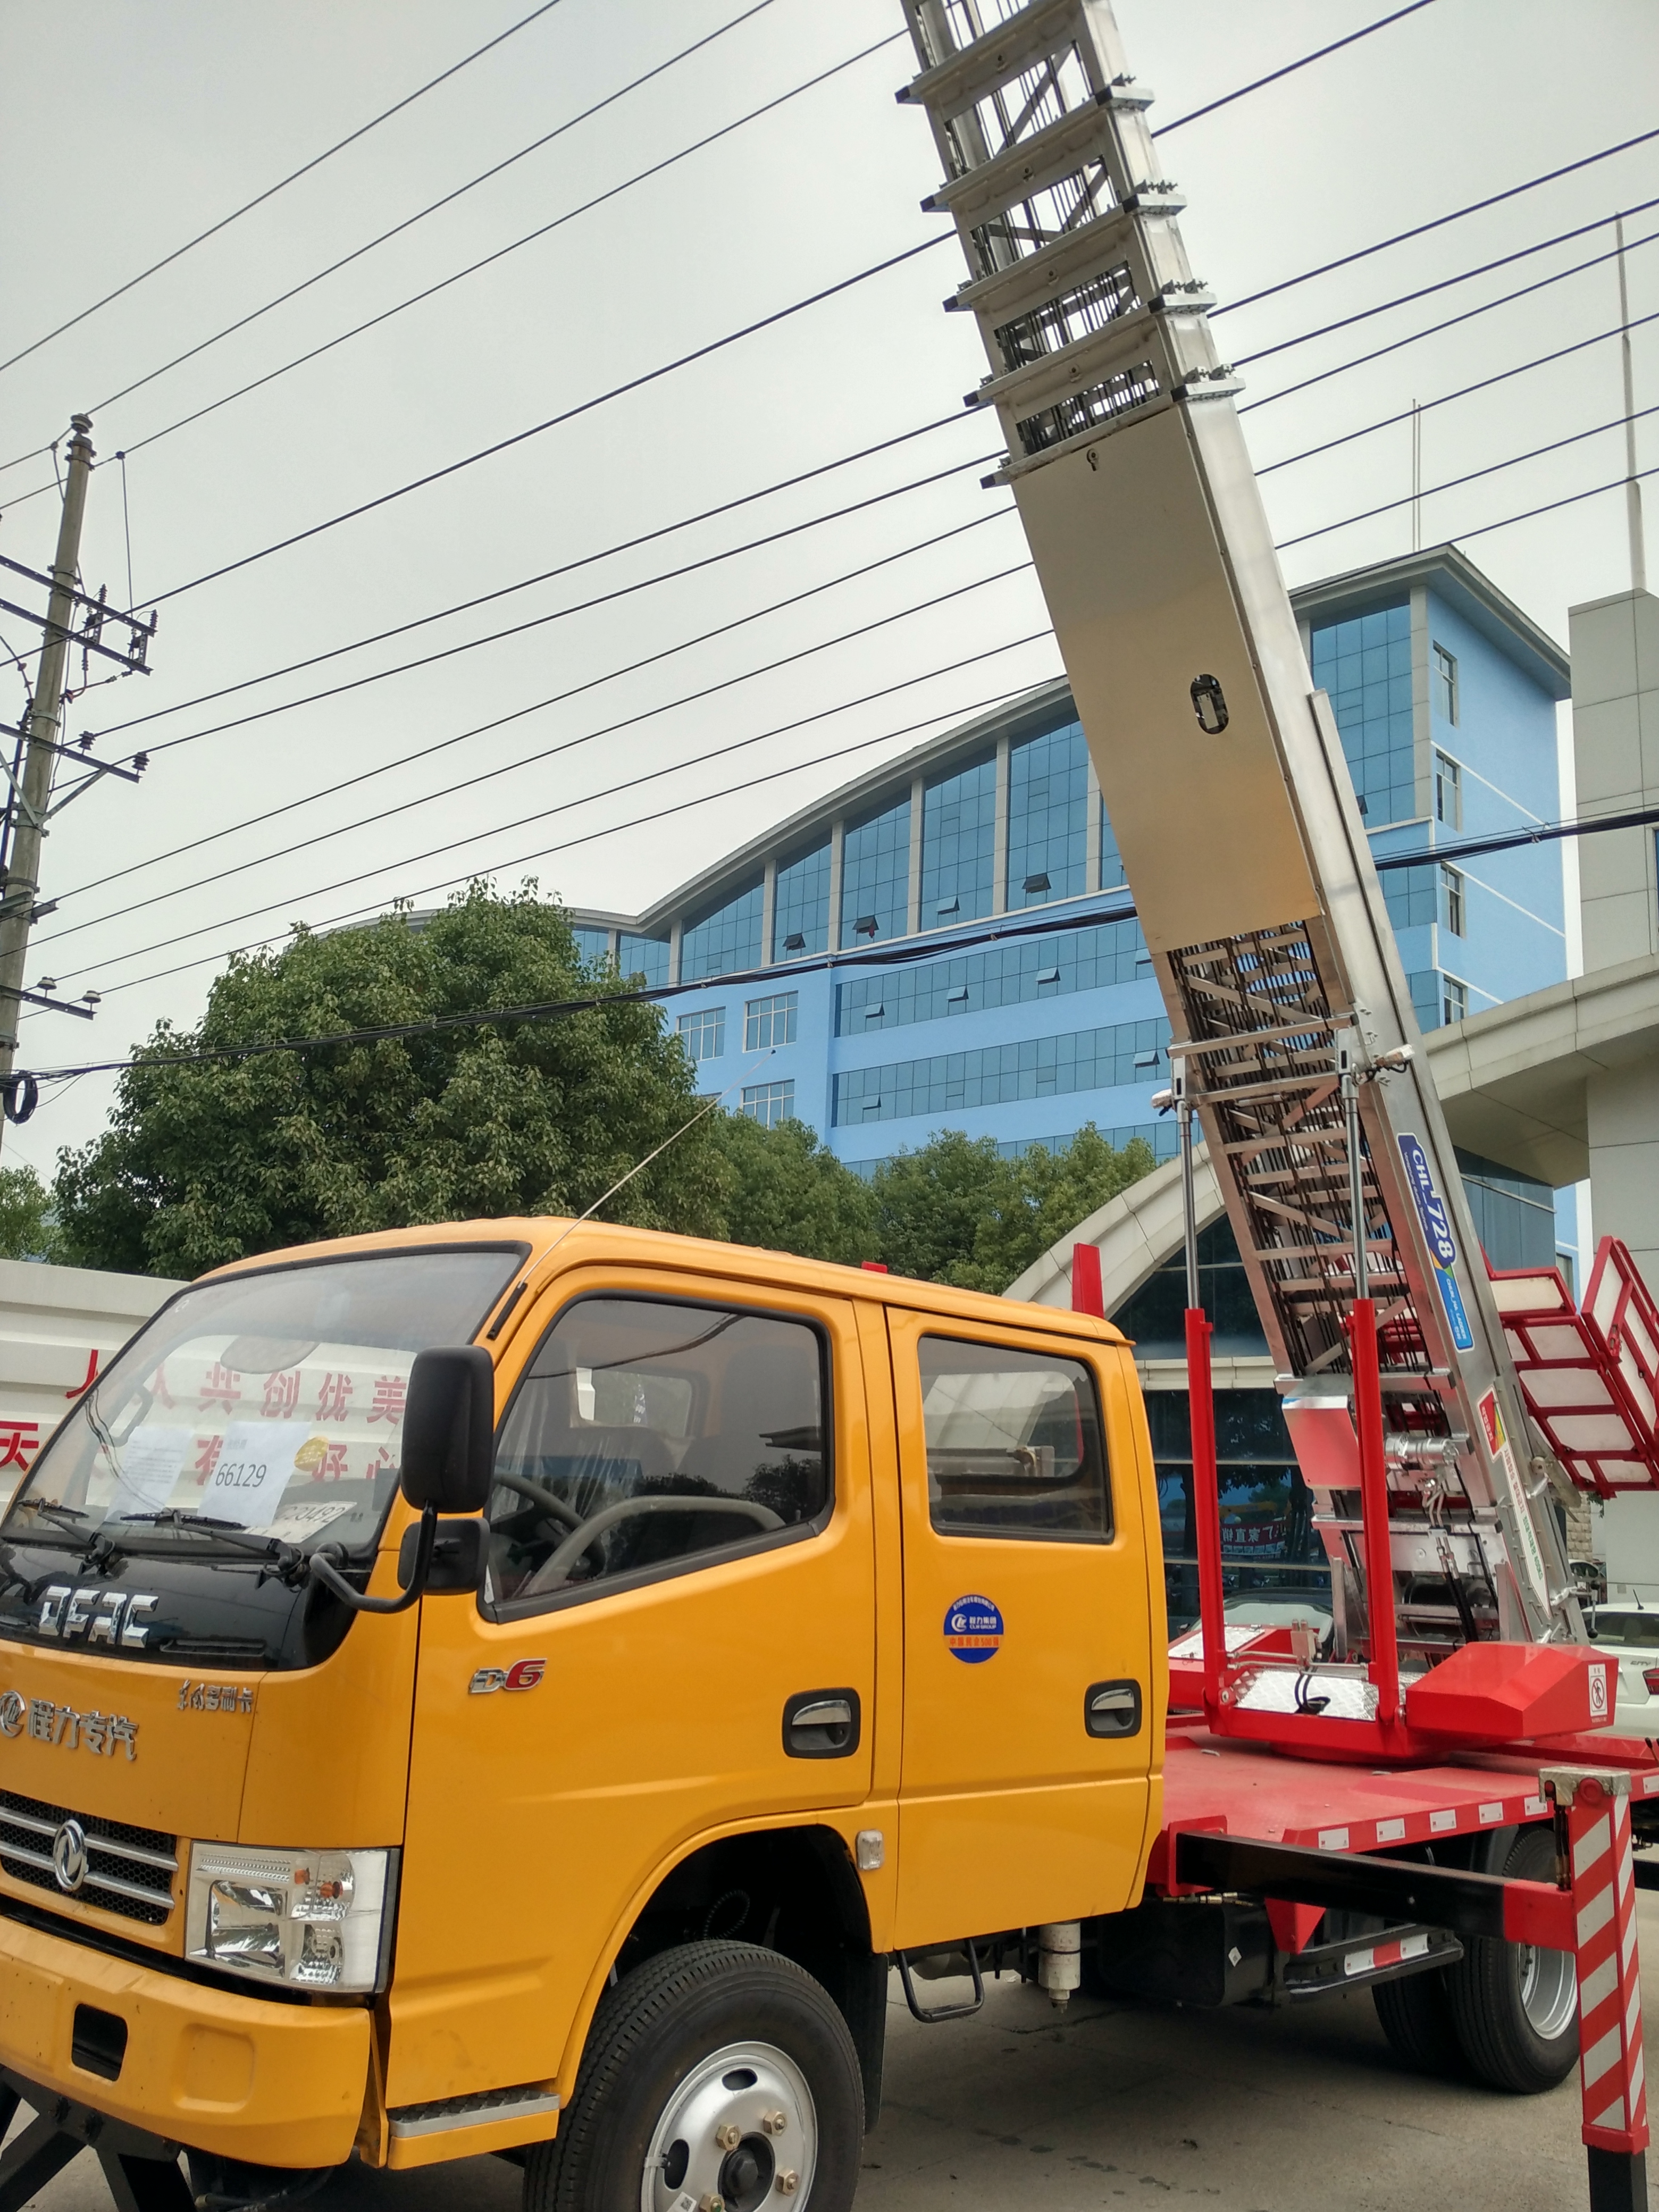 国五云梯搬运车韩国进口设备专业高层装修搬家车图片